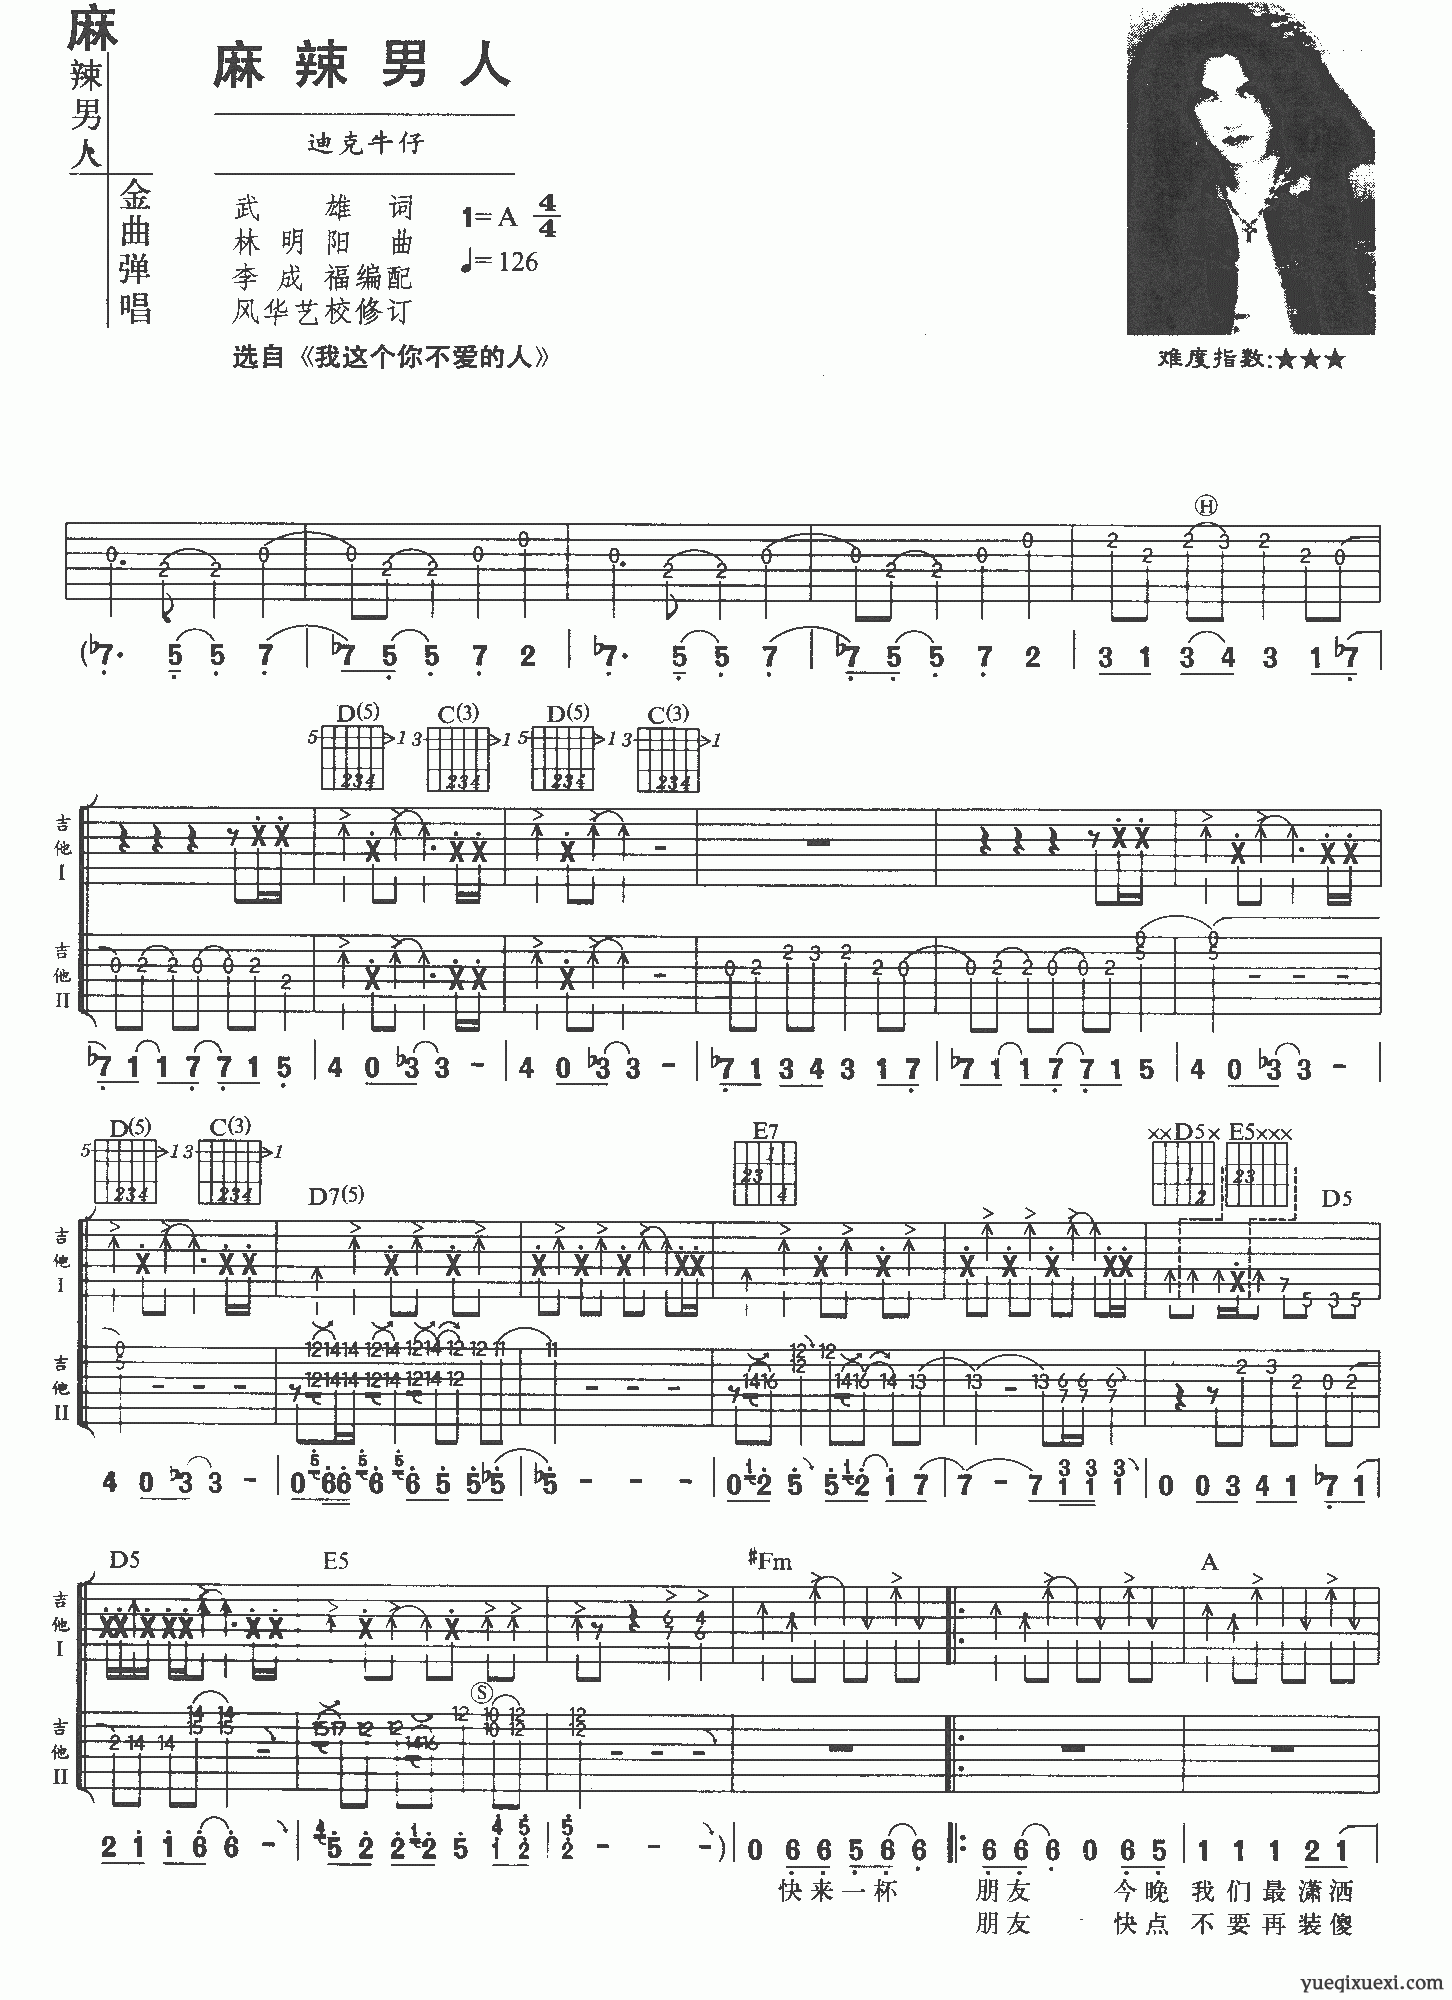 ★ 古天乐-像我这一种男人 琴谱/五线谱pdf-香港流行钢琴协会琴谱下载 ★